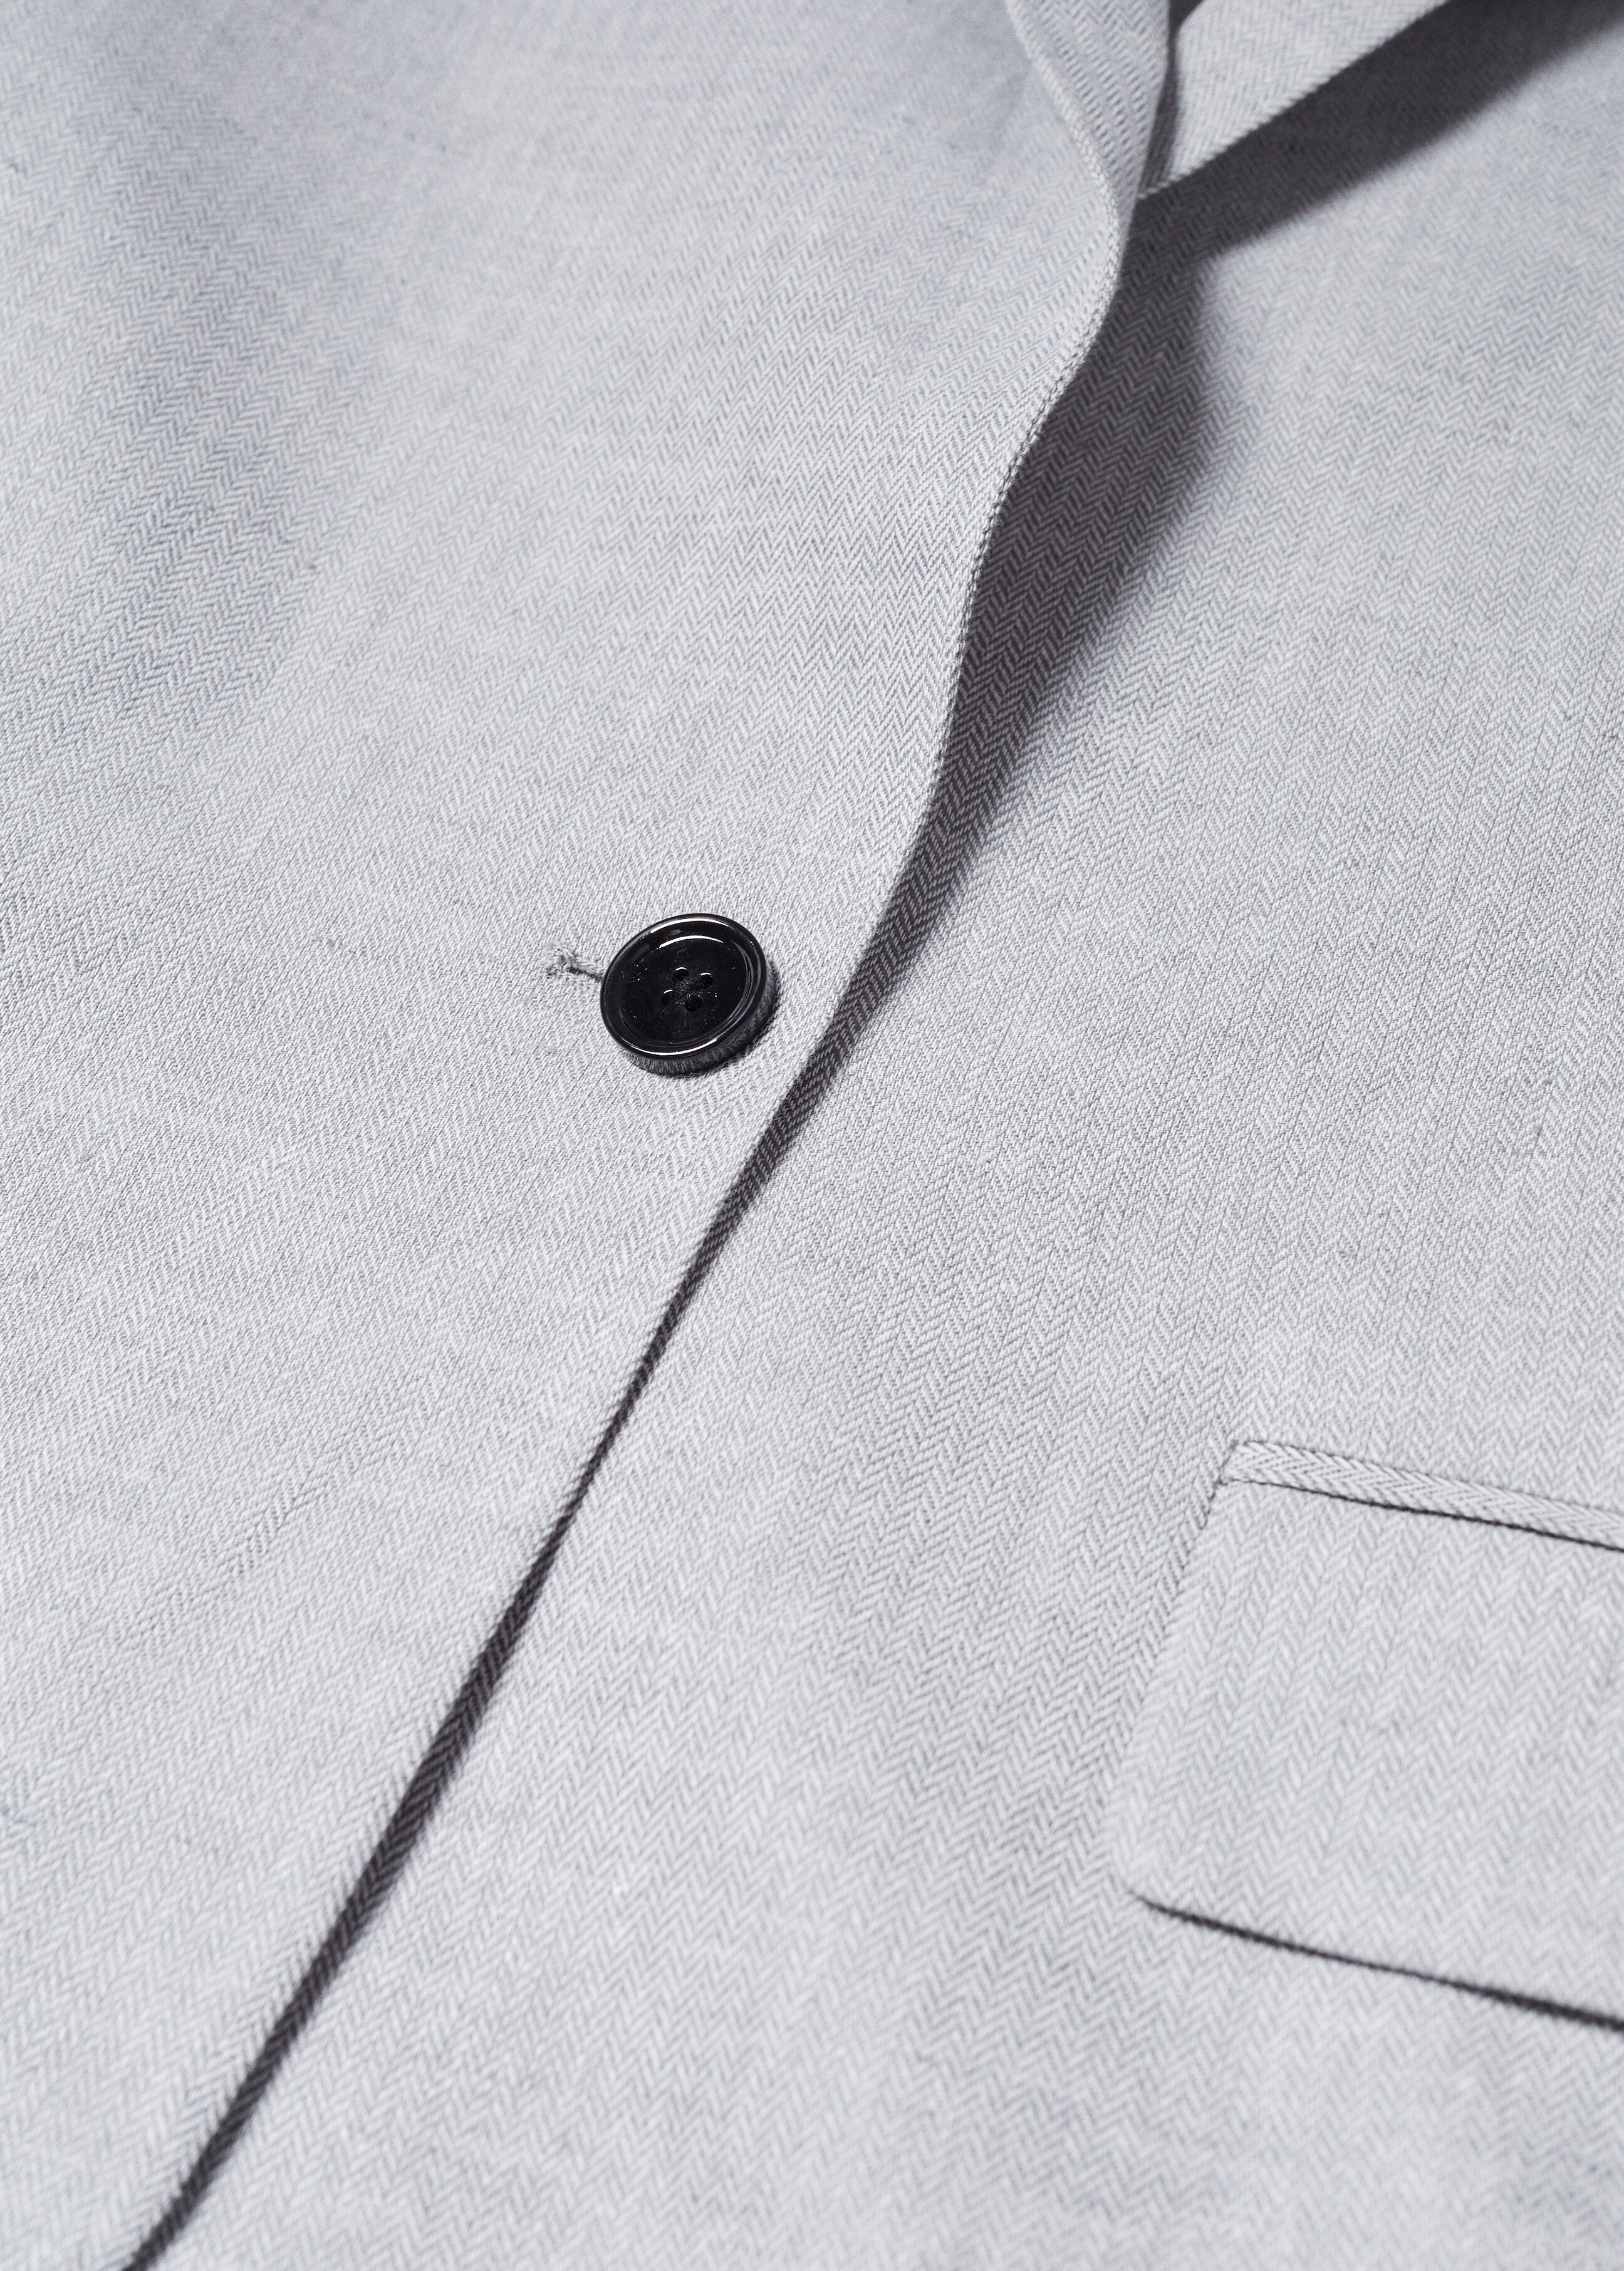 Herringbone linen suit jacket - Details of the article 8